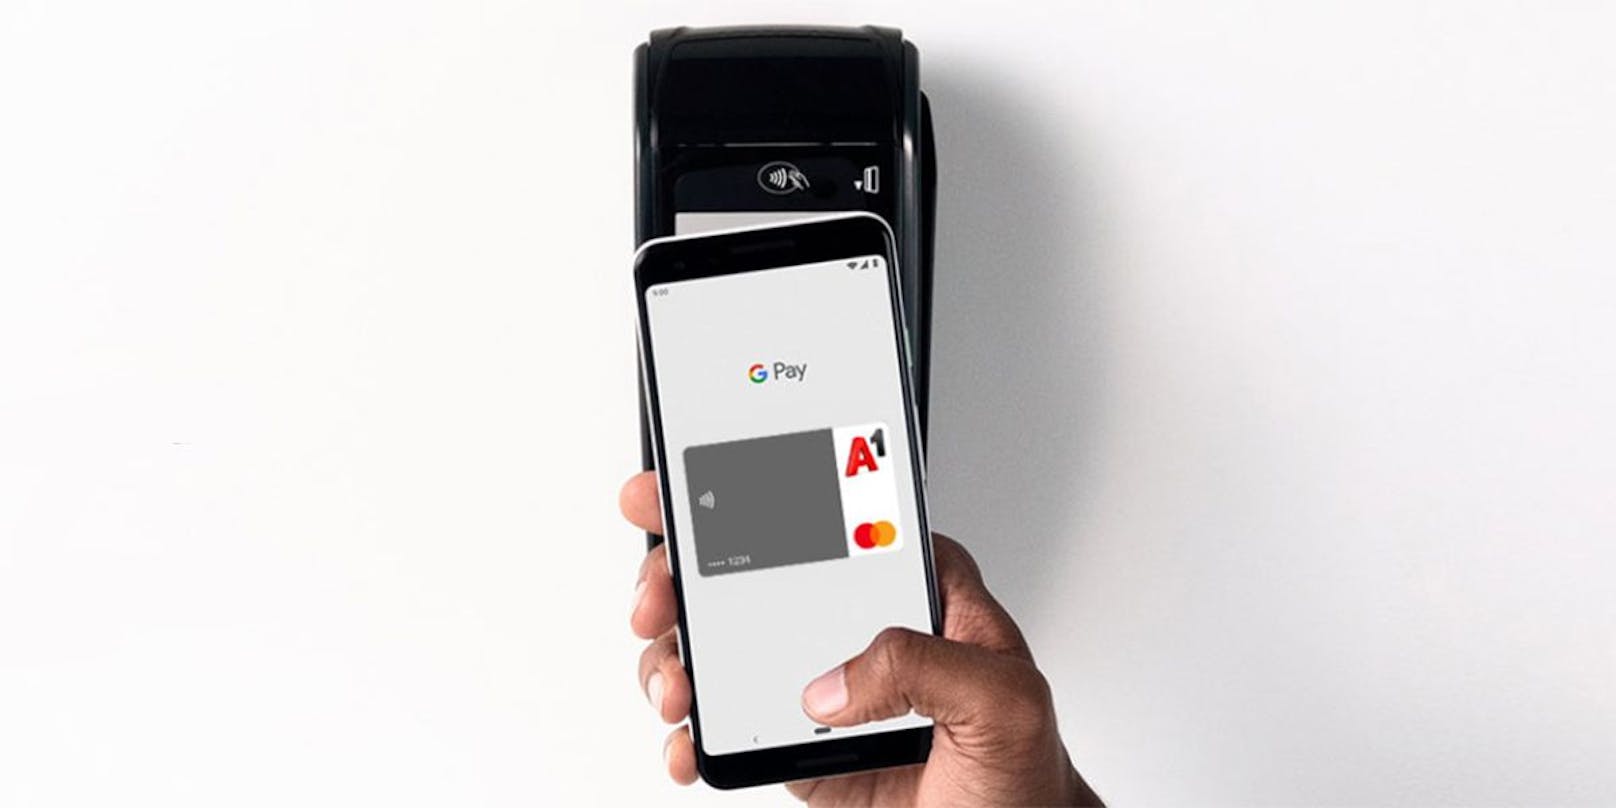 Mit Google Pay lässt sich nun auch die A1 Mastercard hinzufügen.